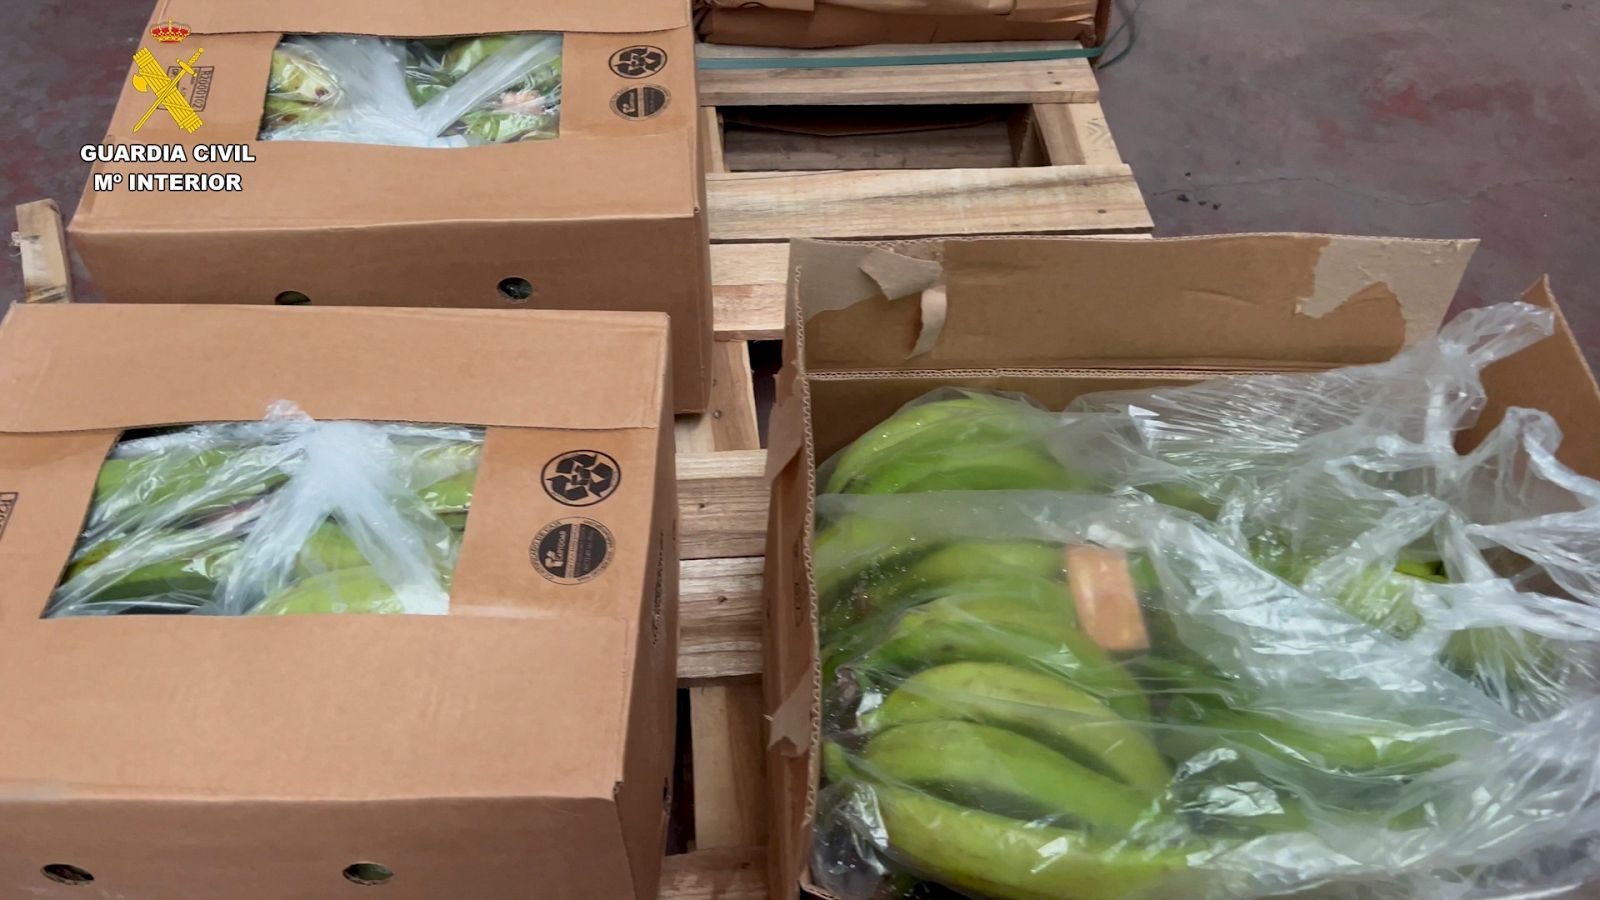 La Guardia Civil ha detenido a 13 personas por intentar introducir más de 6,5 toneladas de cocaína en contenedores de bananas por el puerto de Algeciras desde Sudamérica